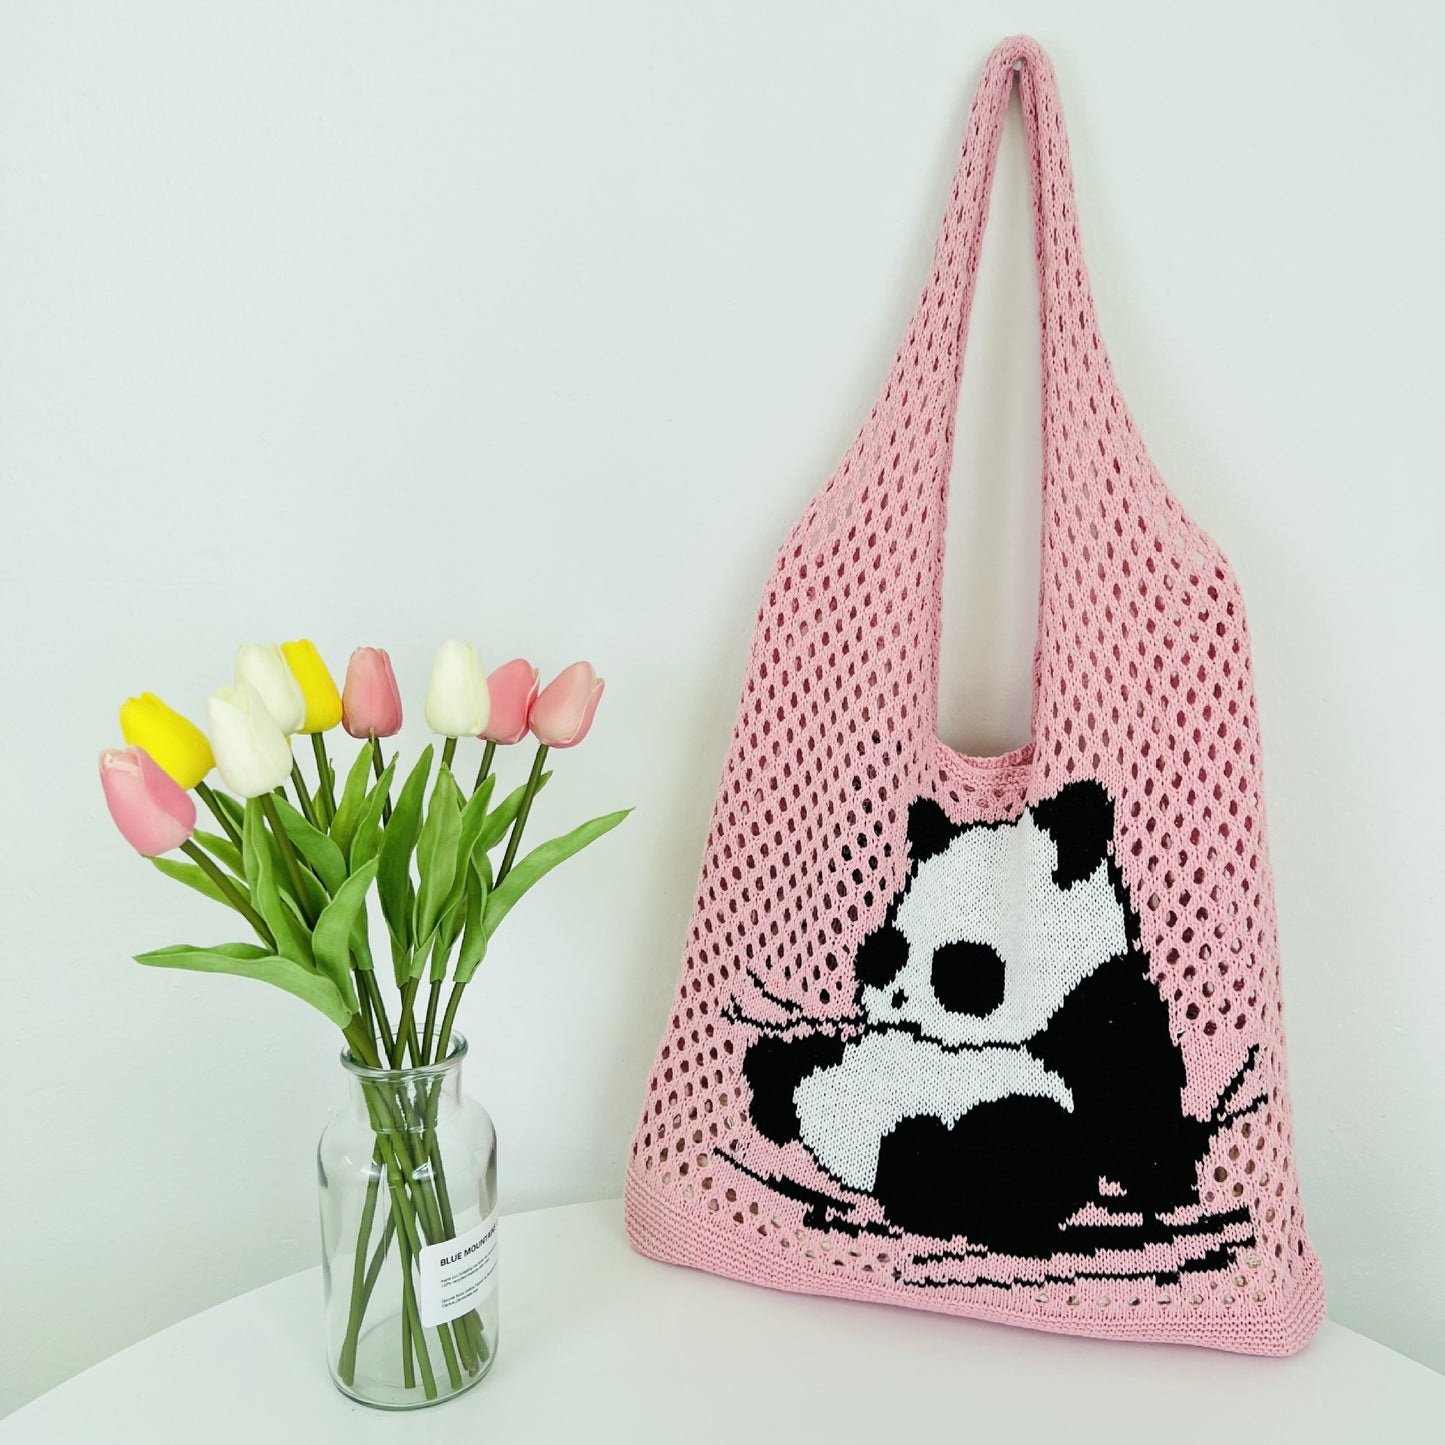 Panda tote bag: Cute Crochet Bag in 5 Delightful Colors